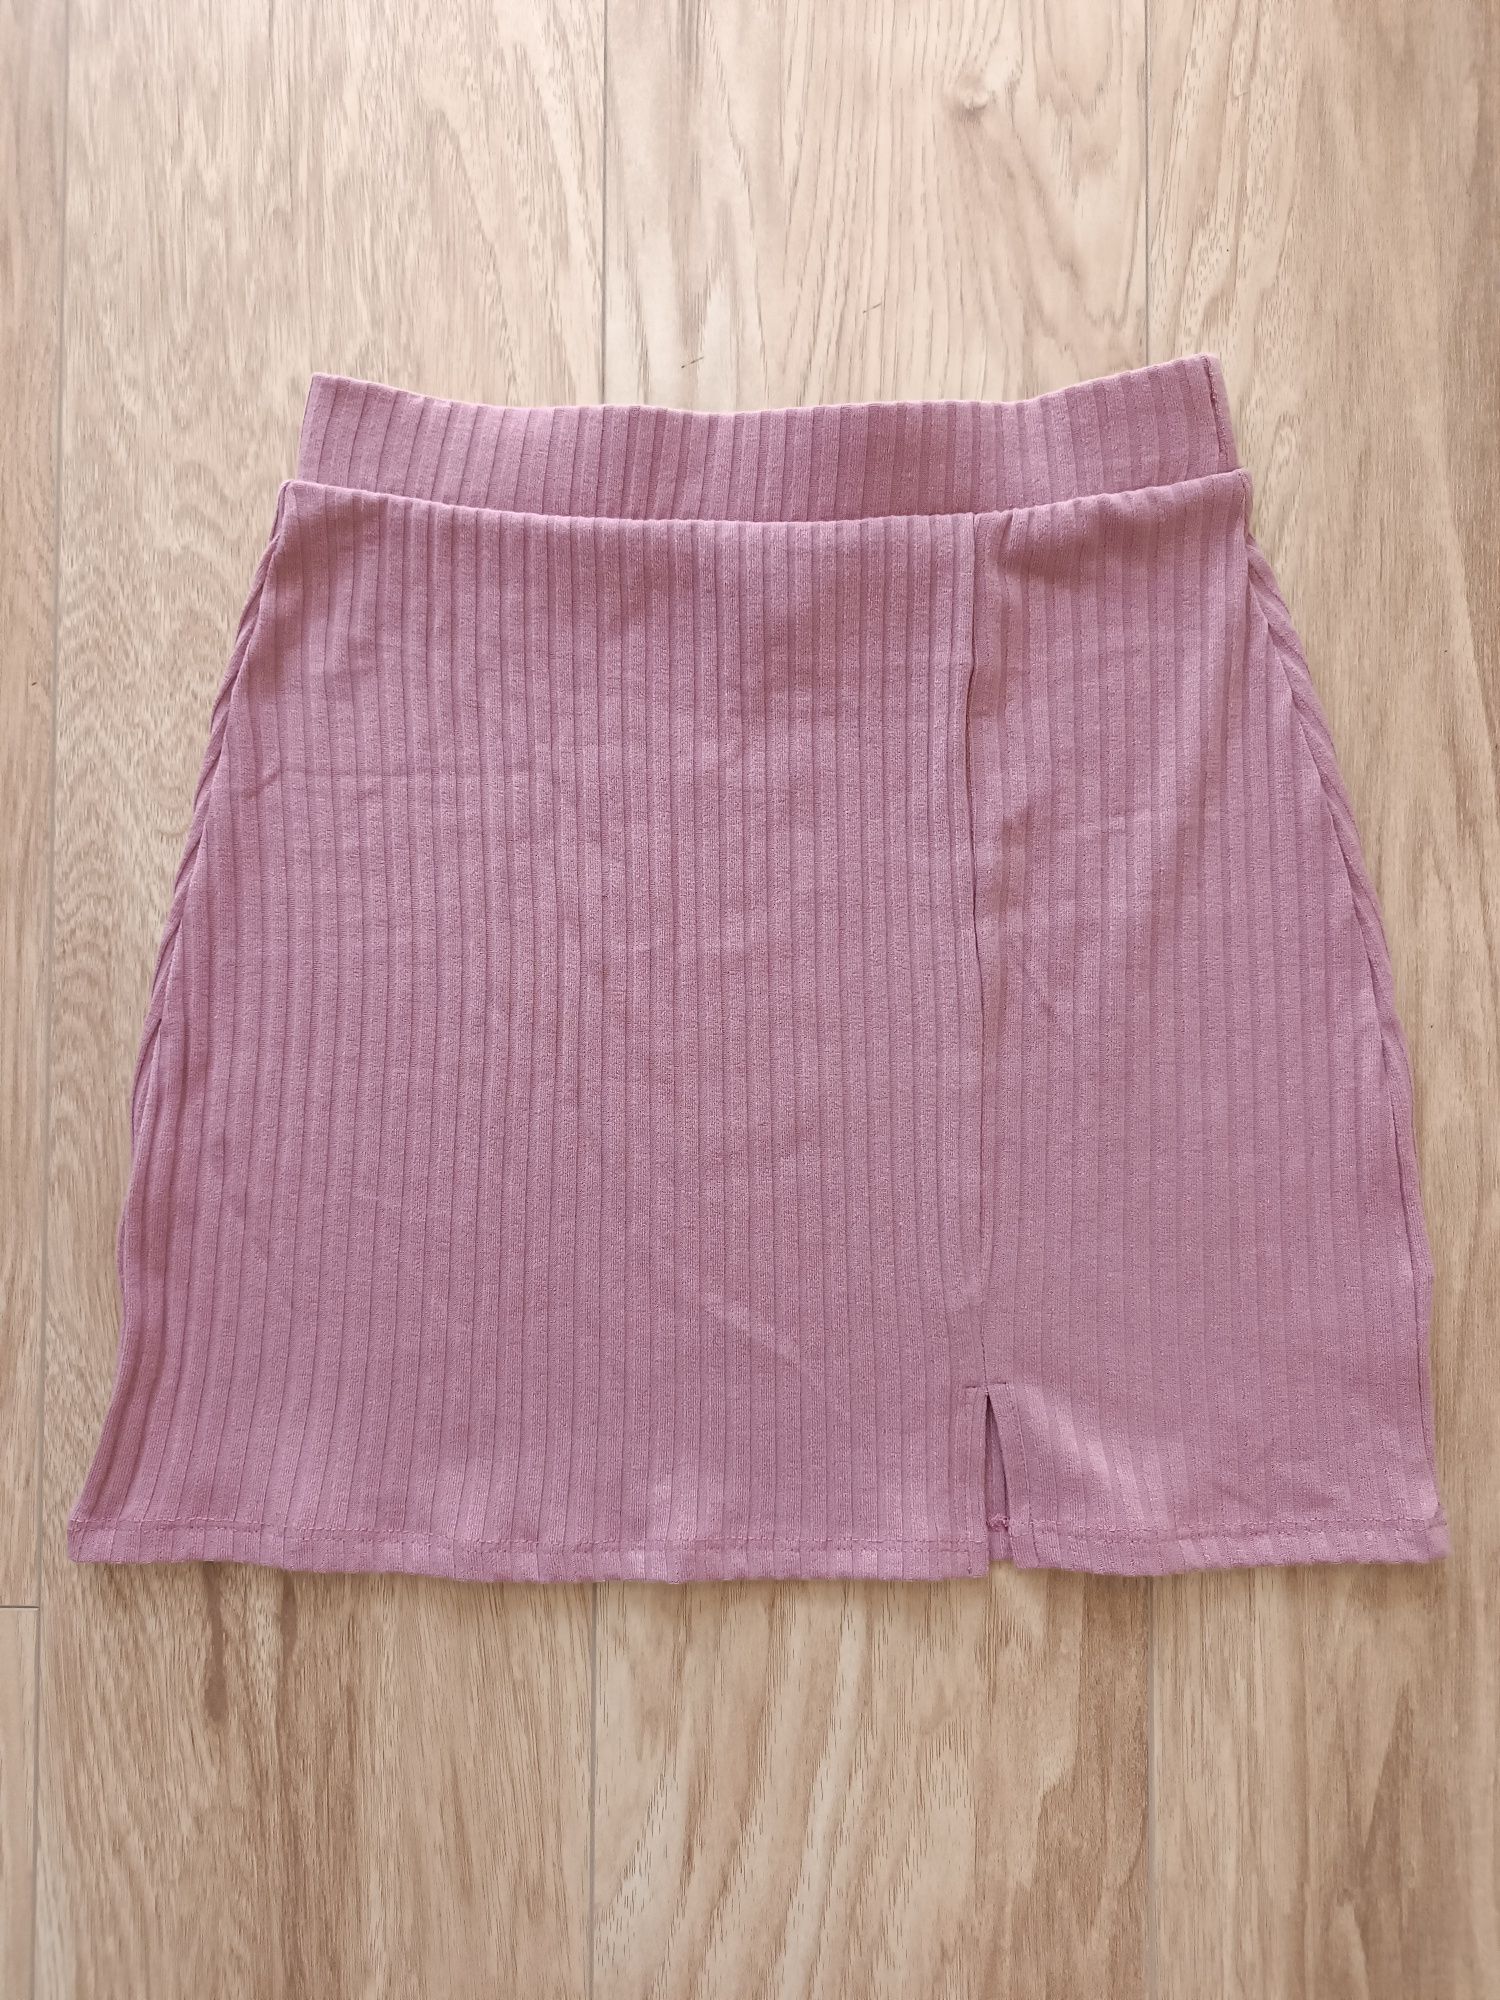 Różowa liliowa krótka spódniczka prążkowana 34/36 XS/S